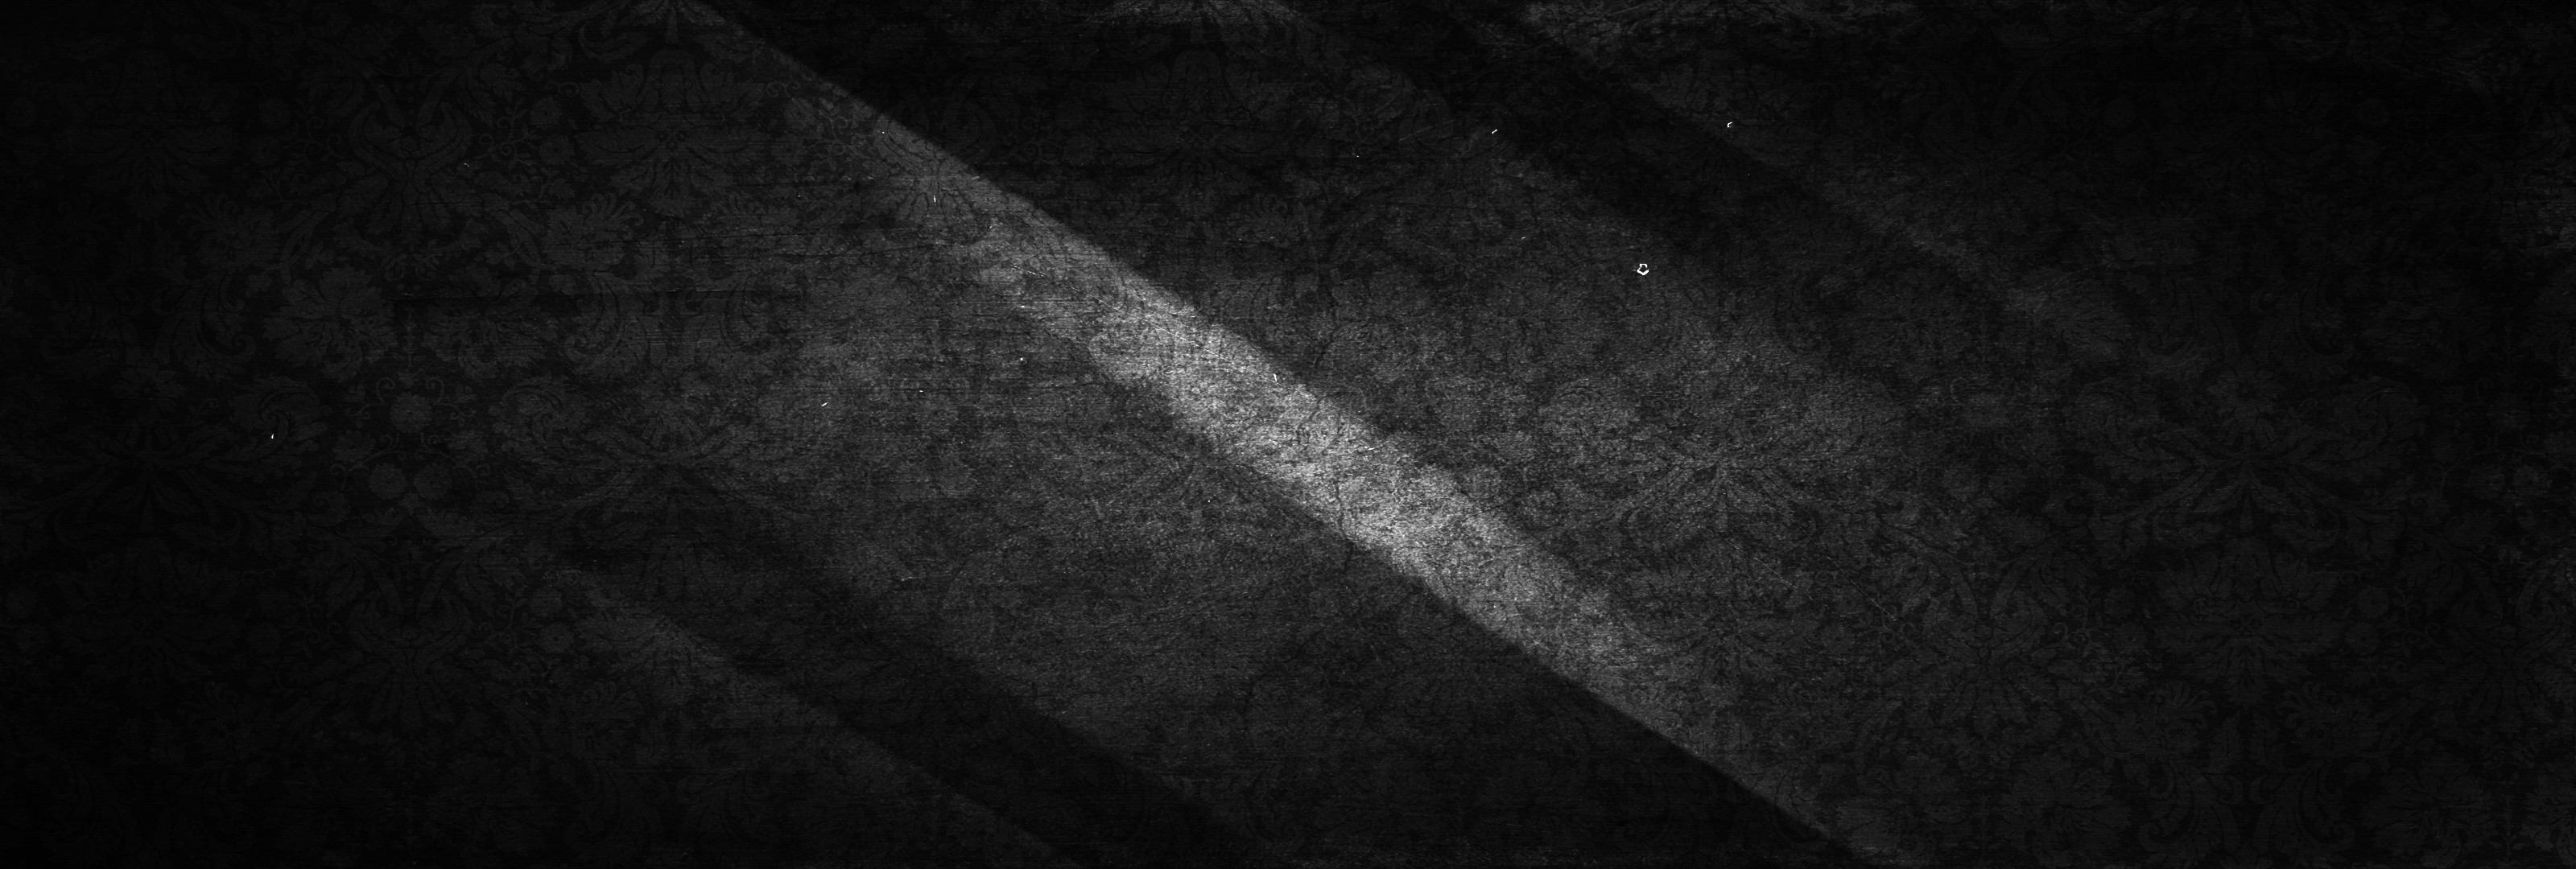 3200x1080 Grunge Black Background Hd Black dark flowers grunge grey #4432